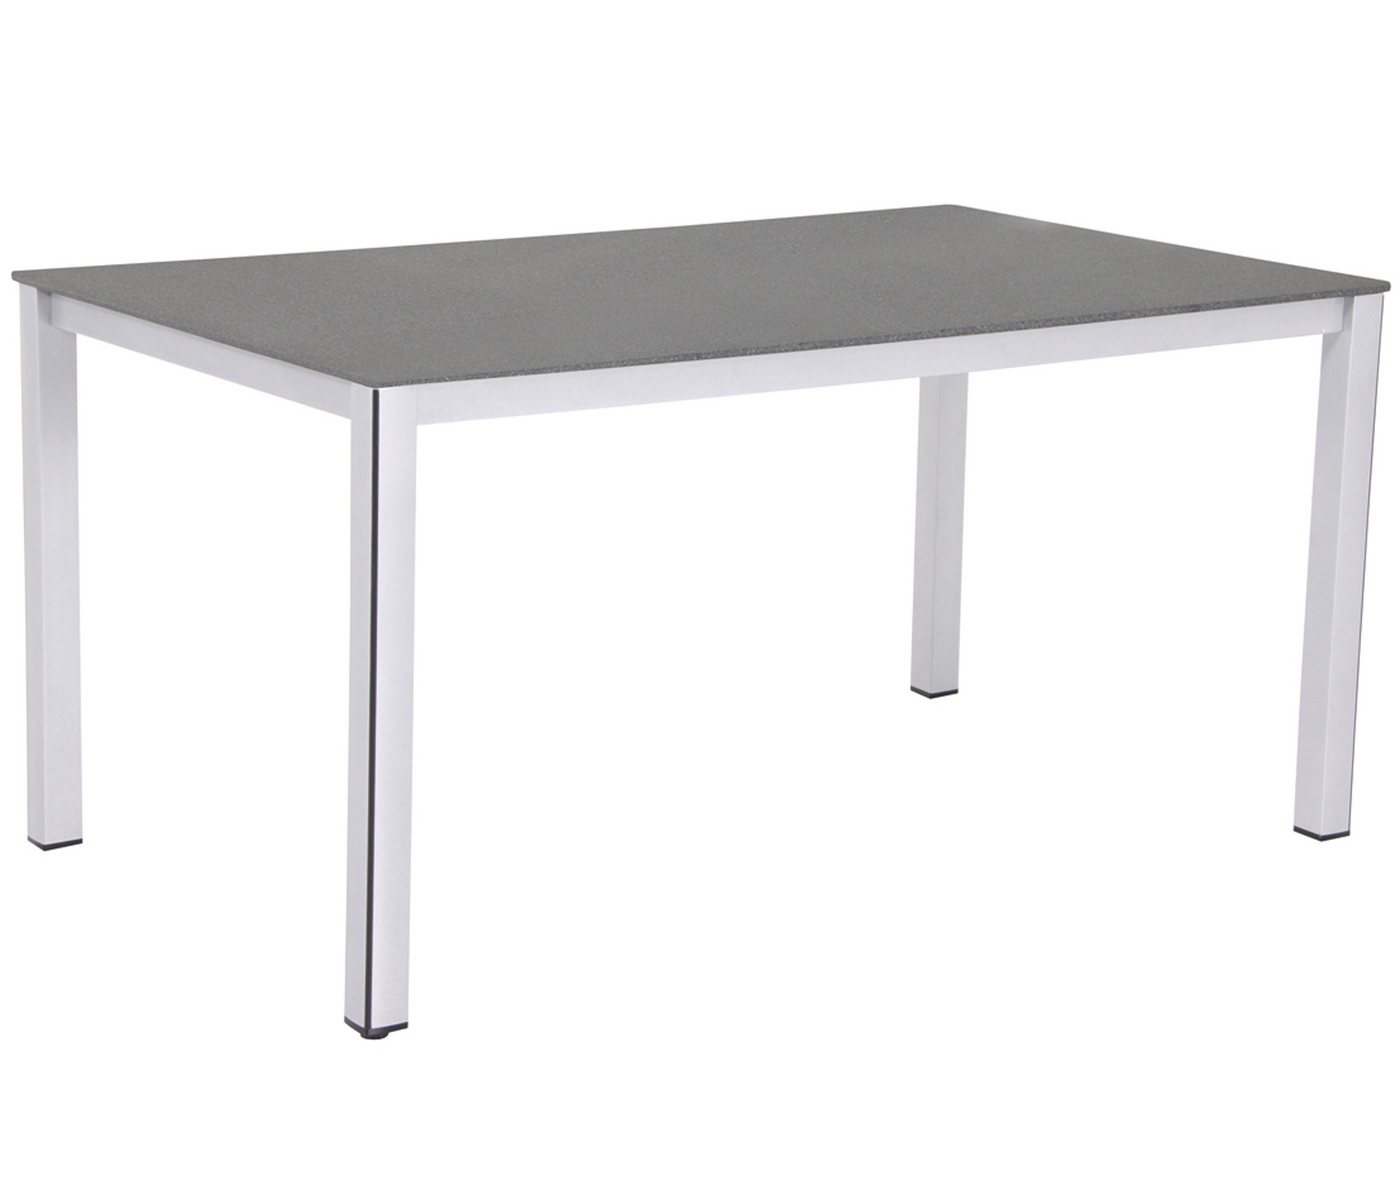 MWH Gartentisch Loft-Tisch Elements, 160 x 90 x 74 cm, Aluminium, Hochwertiger Gartentisch mit Aluminum-Gestell und Creatop-Tischplatte von MWH